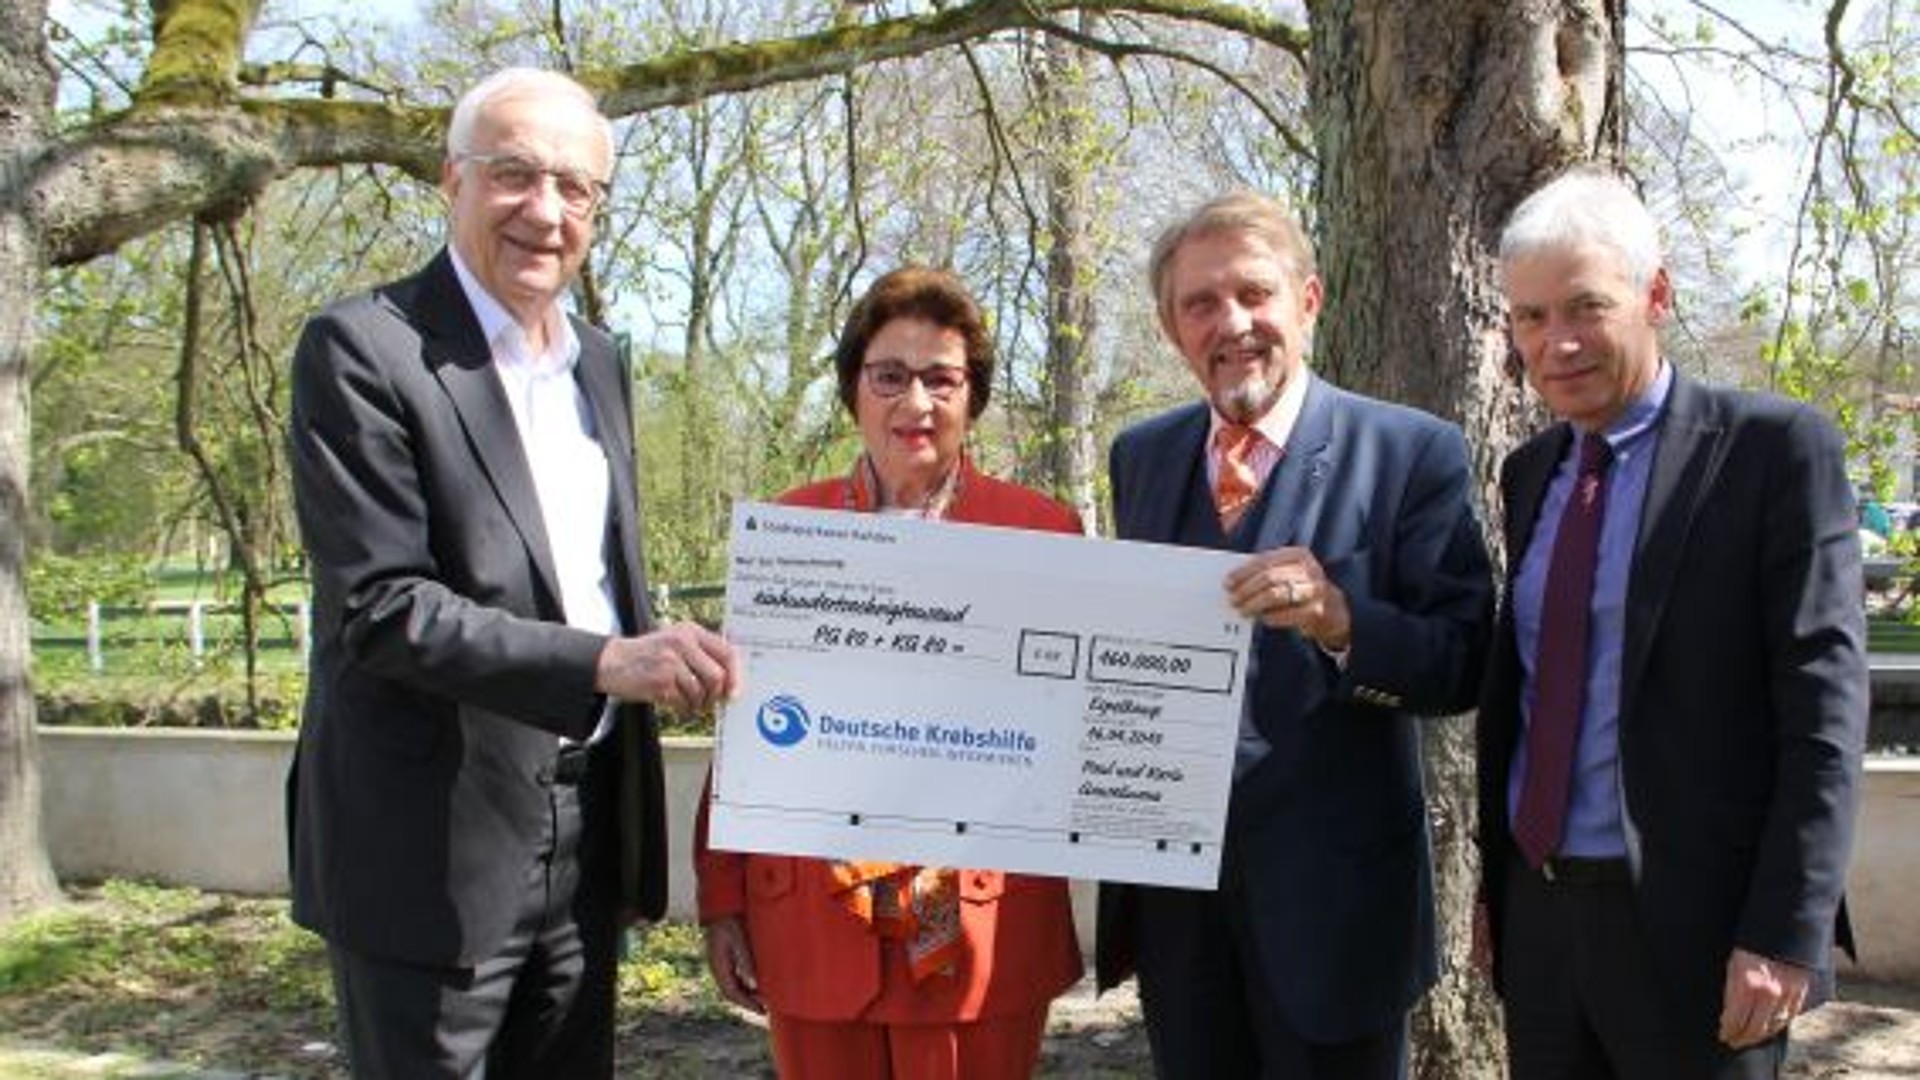 2015-04-17 Spendenscheck über 160.000 EURO für die Deutsche Krebshilfe